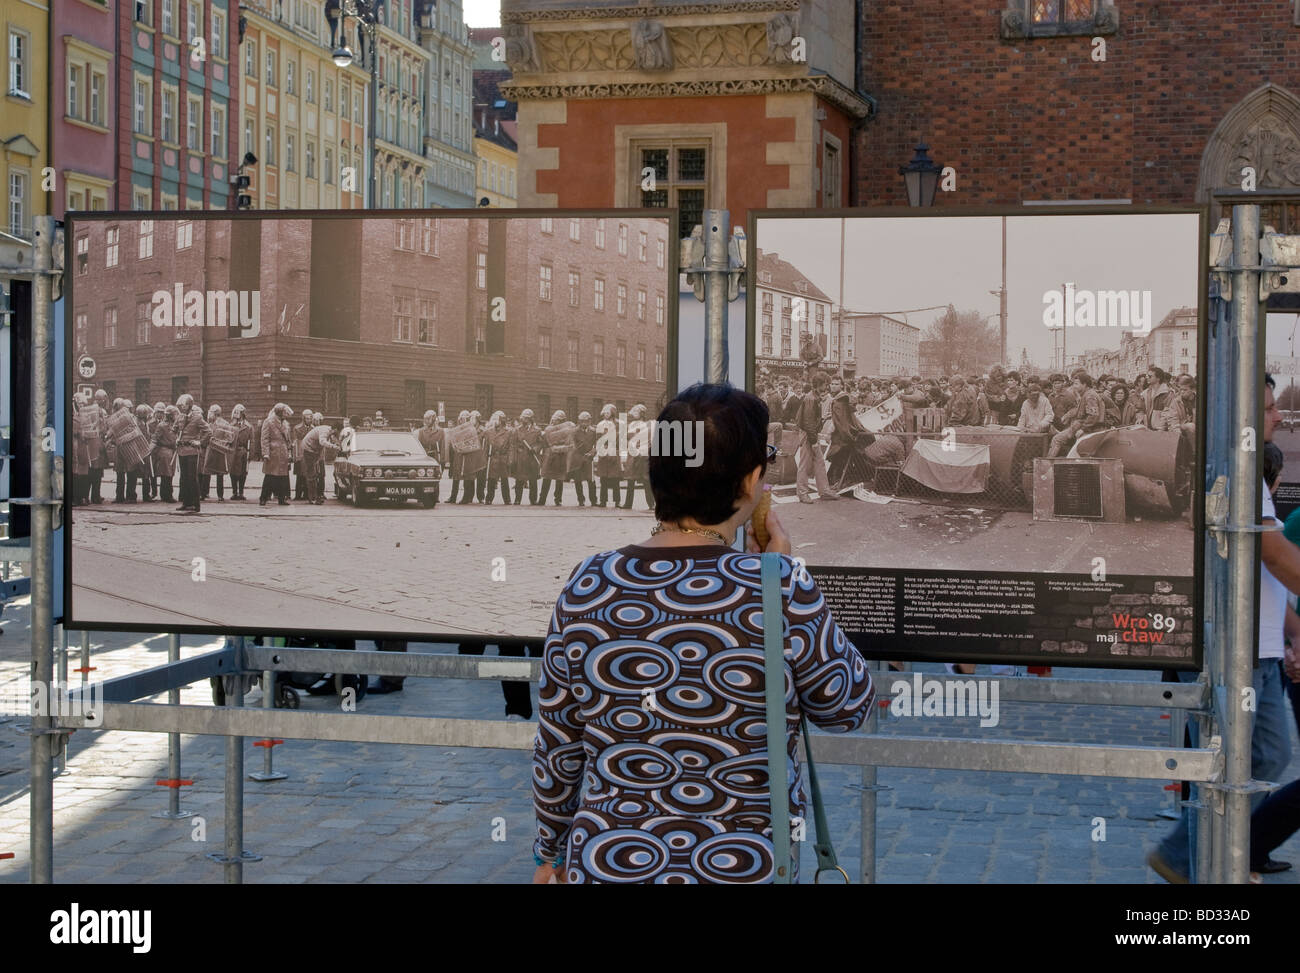 Des photographies historiques prises à Paris en juin 1989 au cours de l'effondrement du communisme et montré en juin 2009 à Wroclaw Pologne Banque D'Images